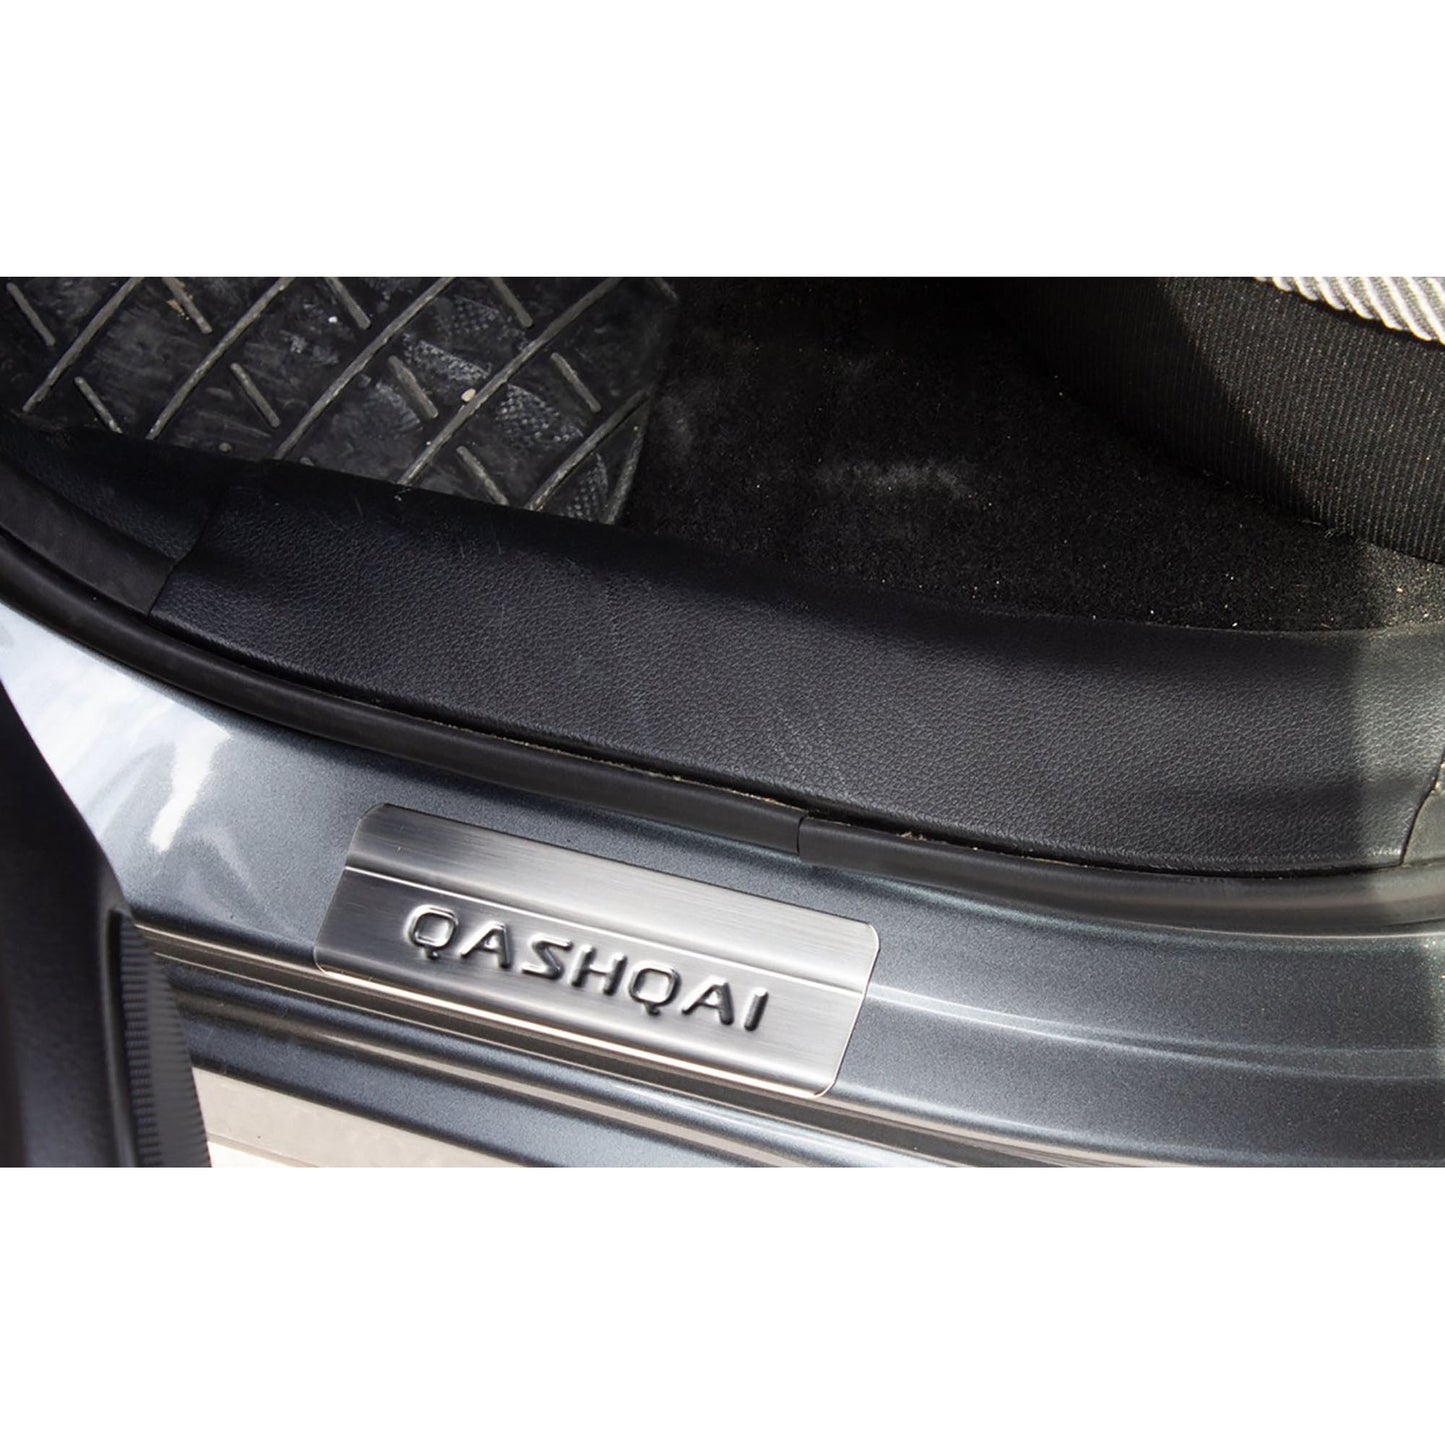 Nissan Qashqai Krom Kapı Eşiği Aksesuarları Detaylı Resimleri, Kampanya bilgileri ve fiyatı - 7